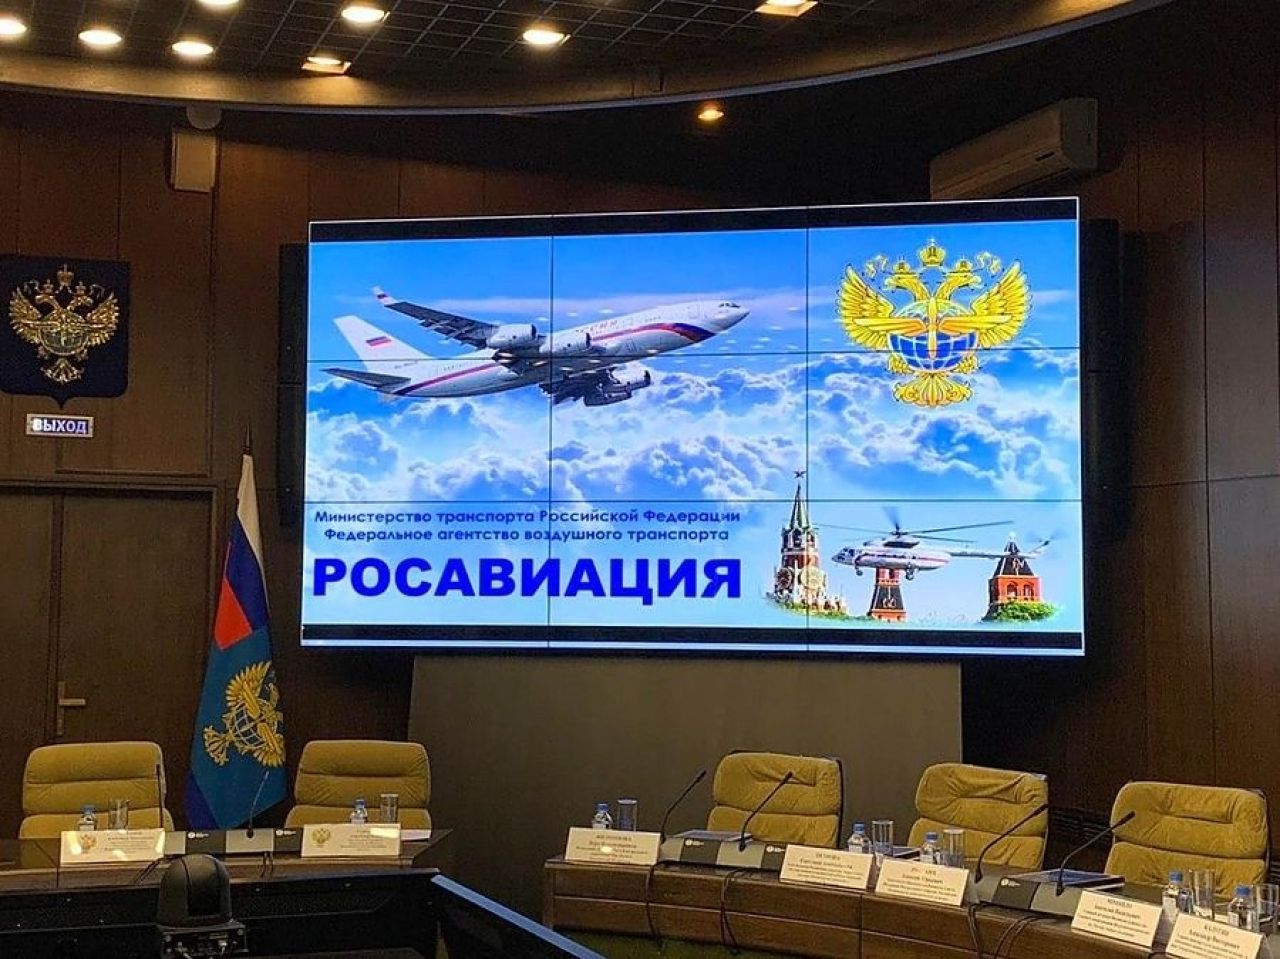 ՌԴ-ի հարավային օդանավակայաններում թռիչքների սահմանափակումները երկարացվել են մինչեւ օգոստոսի 29-ը